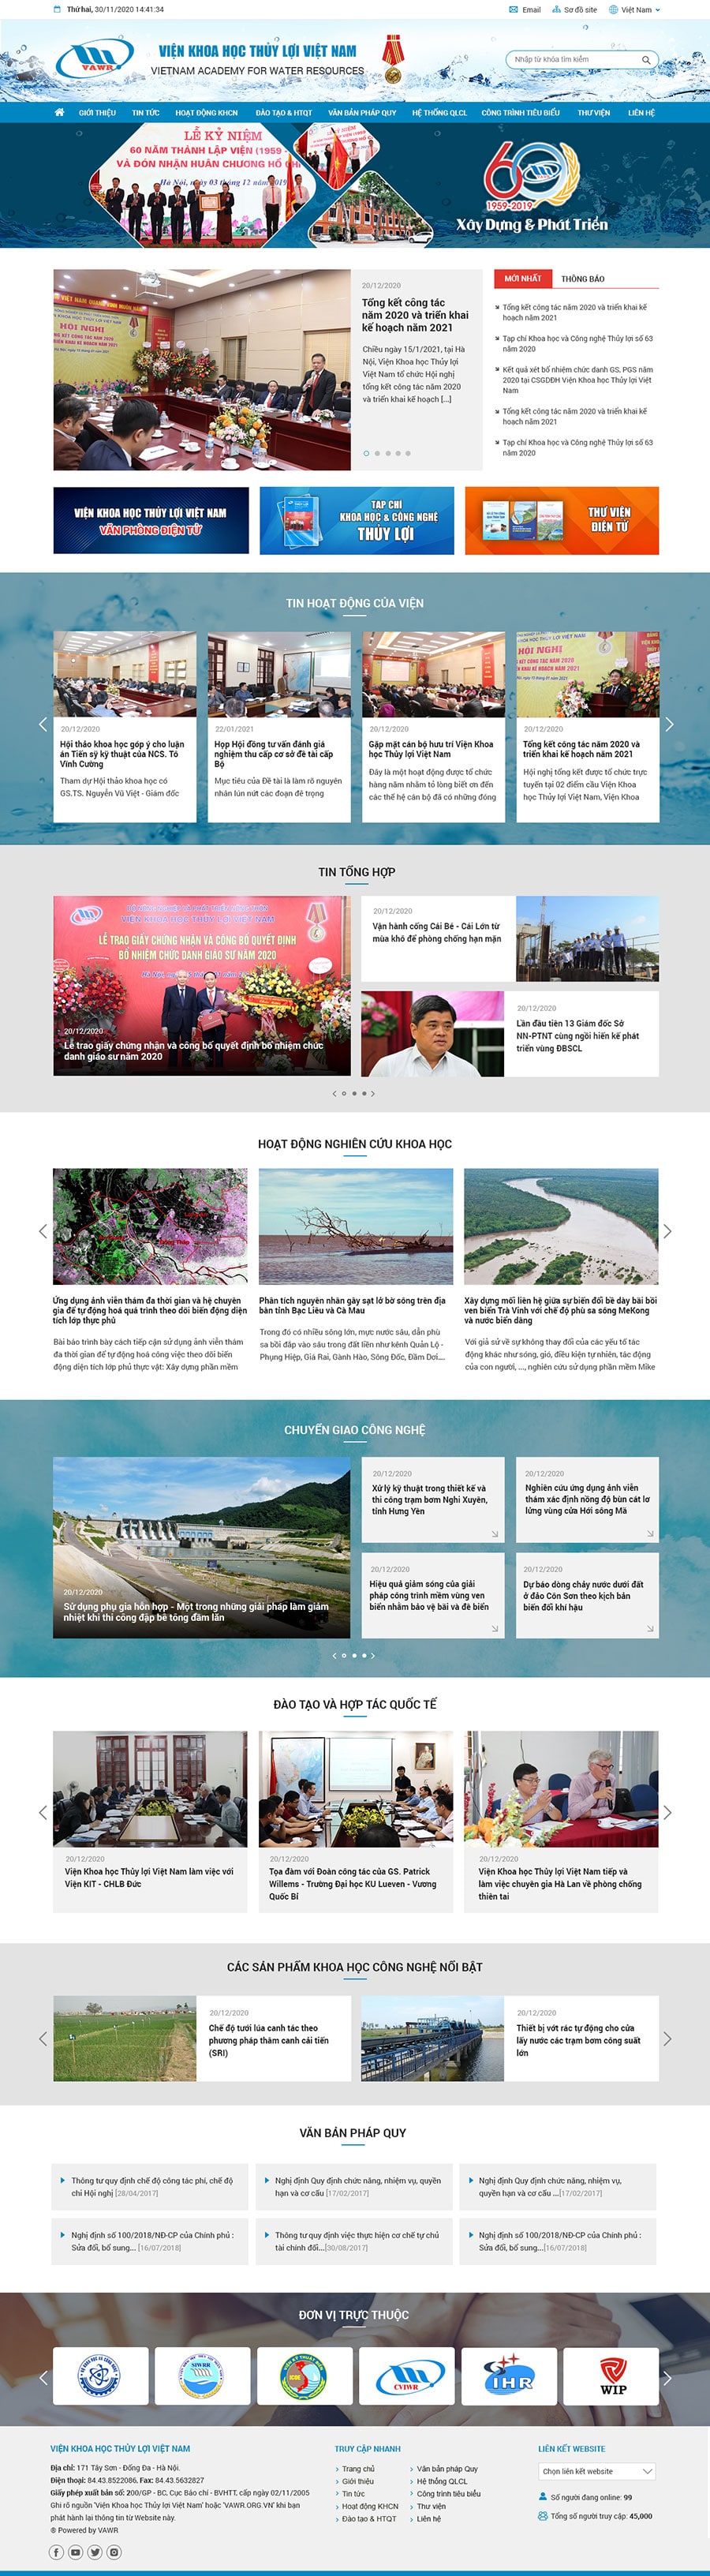 Giao diện website Viện Nghiên cứu Khoa học Thủy lợi Việt Nam